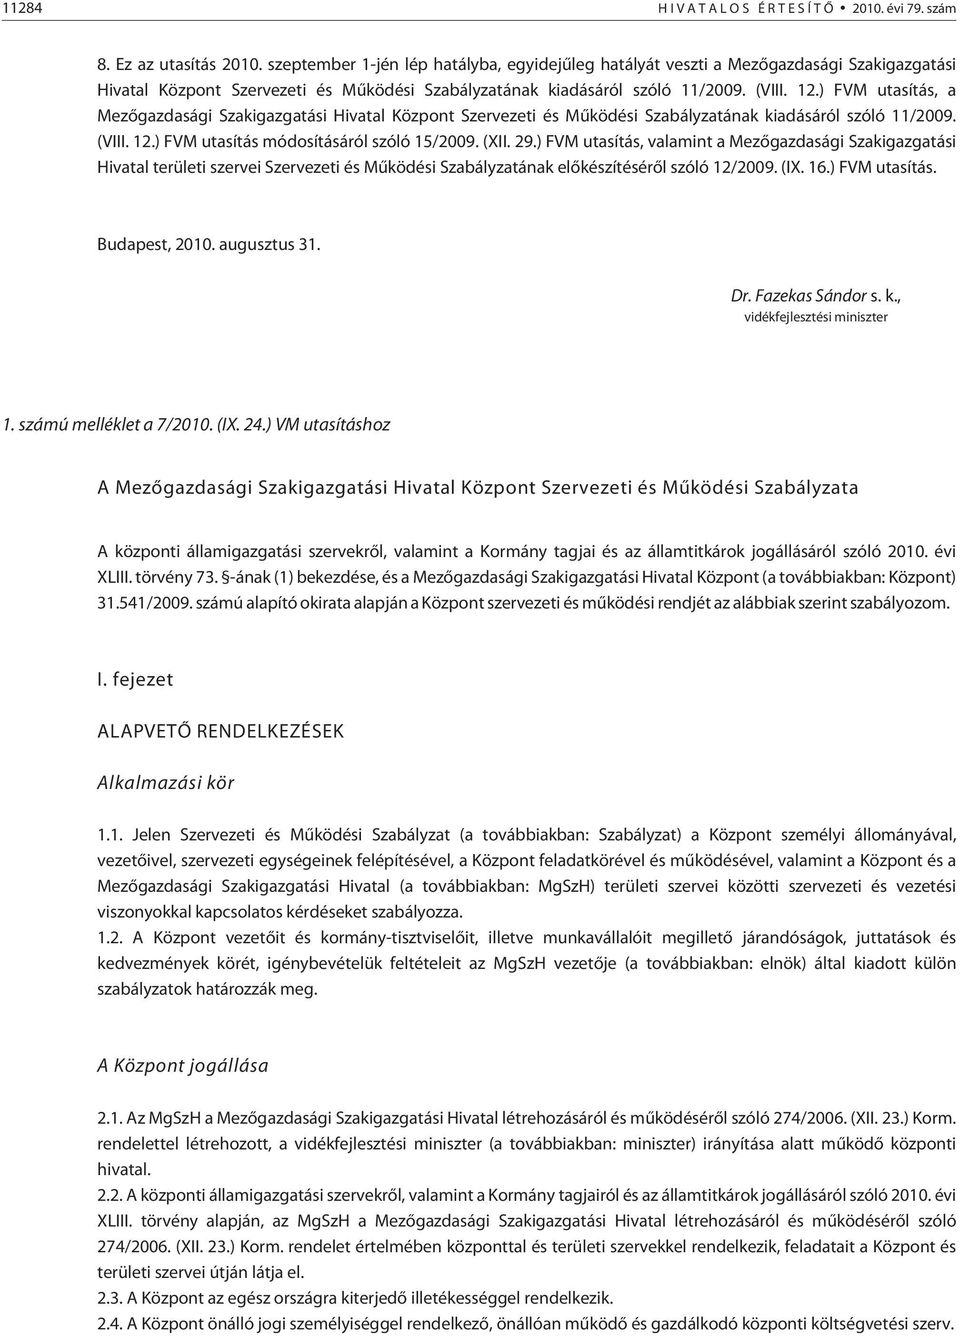 ) FVM utasítás, a Mezõgazdasági Szakigazgatási Hivatal Központ Szervezeti és Mûködési Szabályzatának kiadásáról szóló 11/2009. (VIII. 12.) FVM utasítás módosításáról szóló 15/2009. (XII. 29.